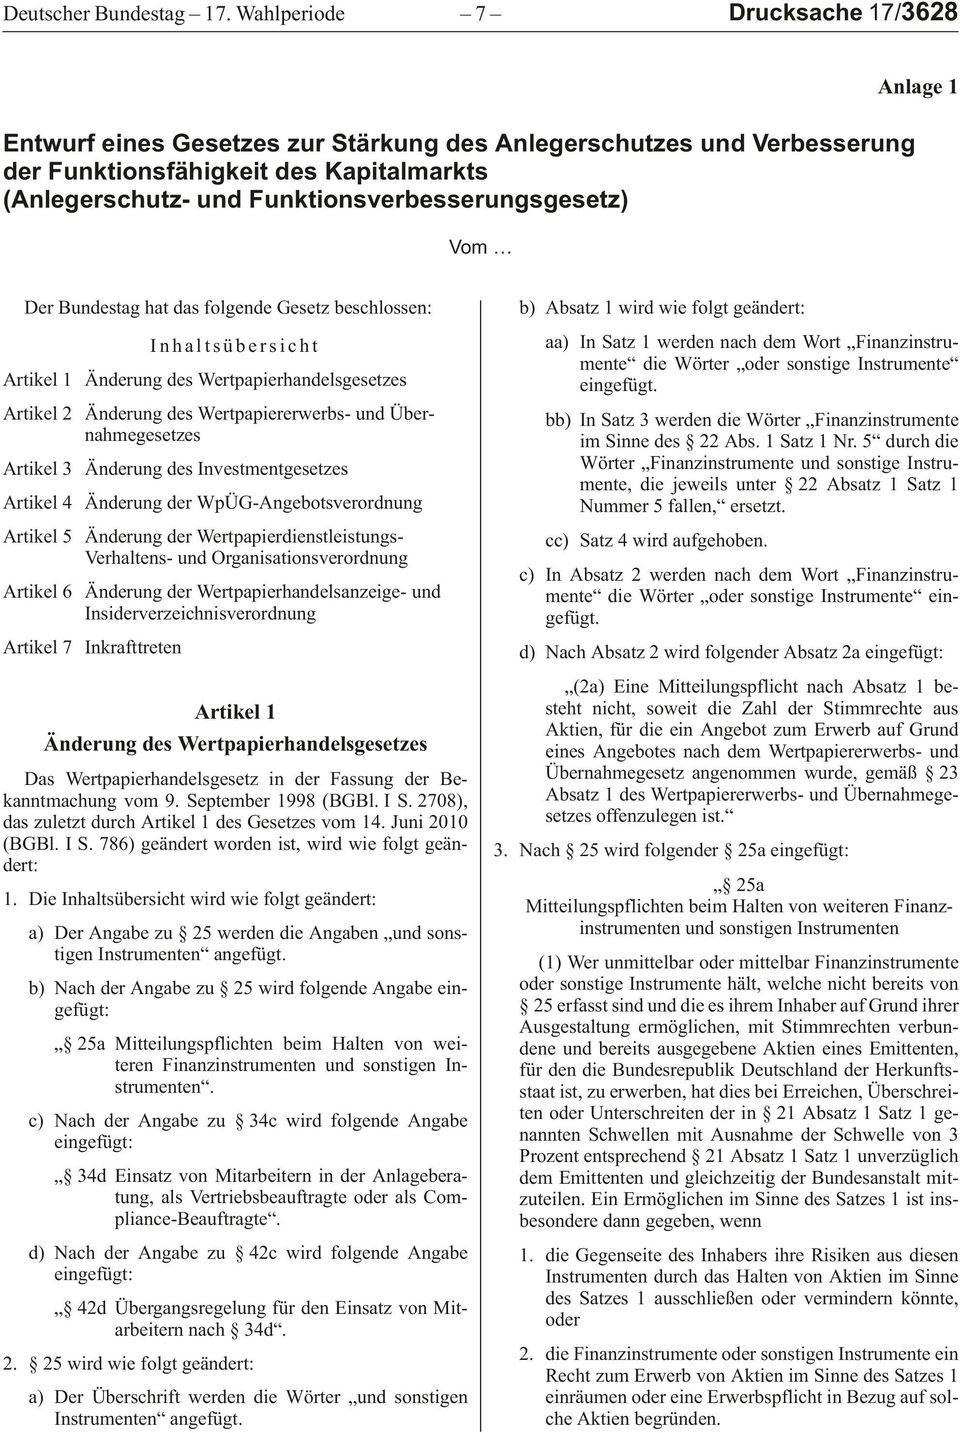 Vom Anlage 1 Der Bundestag hat das folgende Gesetz beschlossen: Inhaltsübersicht Artikel 1 Änderung des Wertpapierhandelsgesetzes Artikel 2 Änderung des Wertpapiererwerbs- und Übernahmegesetzes